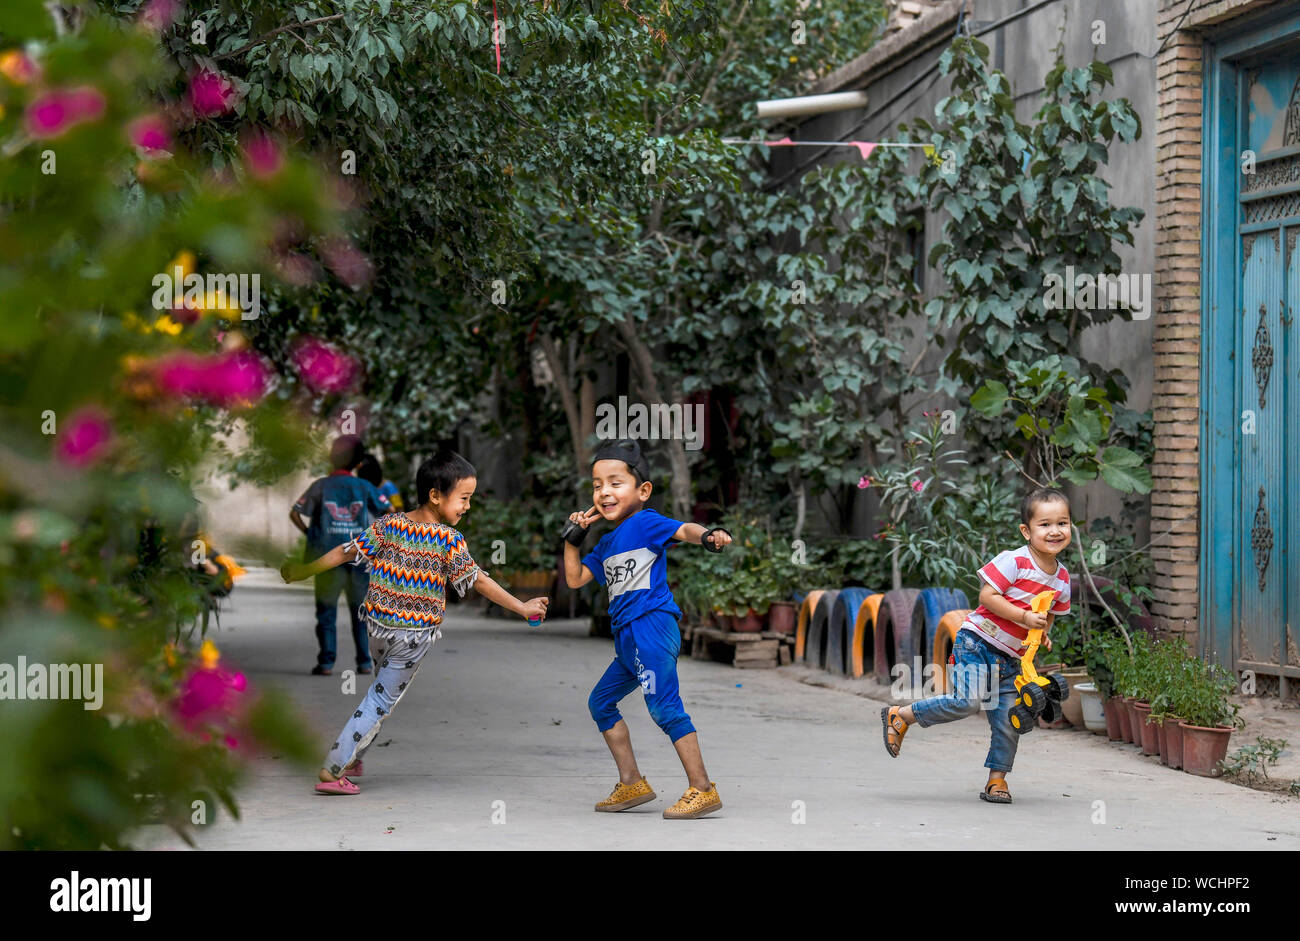 (190828) - KASHGAR, Aug 28, 2019 (Xinhua) - Kinder haben Spaß in einer Gasse im Dorf Qianjin in Kashgar, Nordwesten Chinas Autonome Region Xinjiang Uygur, Aug 18., 2019. Wohnungen von duftenden Blüten im Überfluss umgeben, übersichtliche Häuser und Gassen von einem gepflegten Erscheinungsbild, verschiedene Bäume entlang der Straßen, wo die Kinder sich genießen, die pastorale Szene überall in Qianjin Dorf gesehen werden kann. Die idyllische Schönheit in Qianjin Dorf leitet sich aus seiner boomenden Wirtschaft, in der Blume Salima Sultan ist ein Pionier. Salima, ein 60-jähriger Dorfbewohner, entwickelte sich die Vorliebe der f Stockfoto